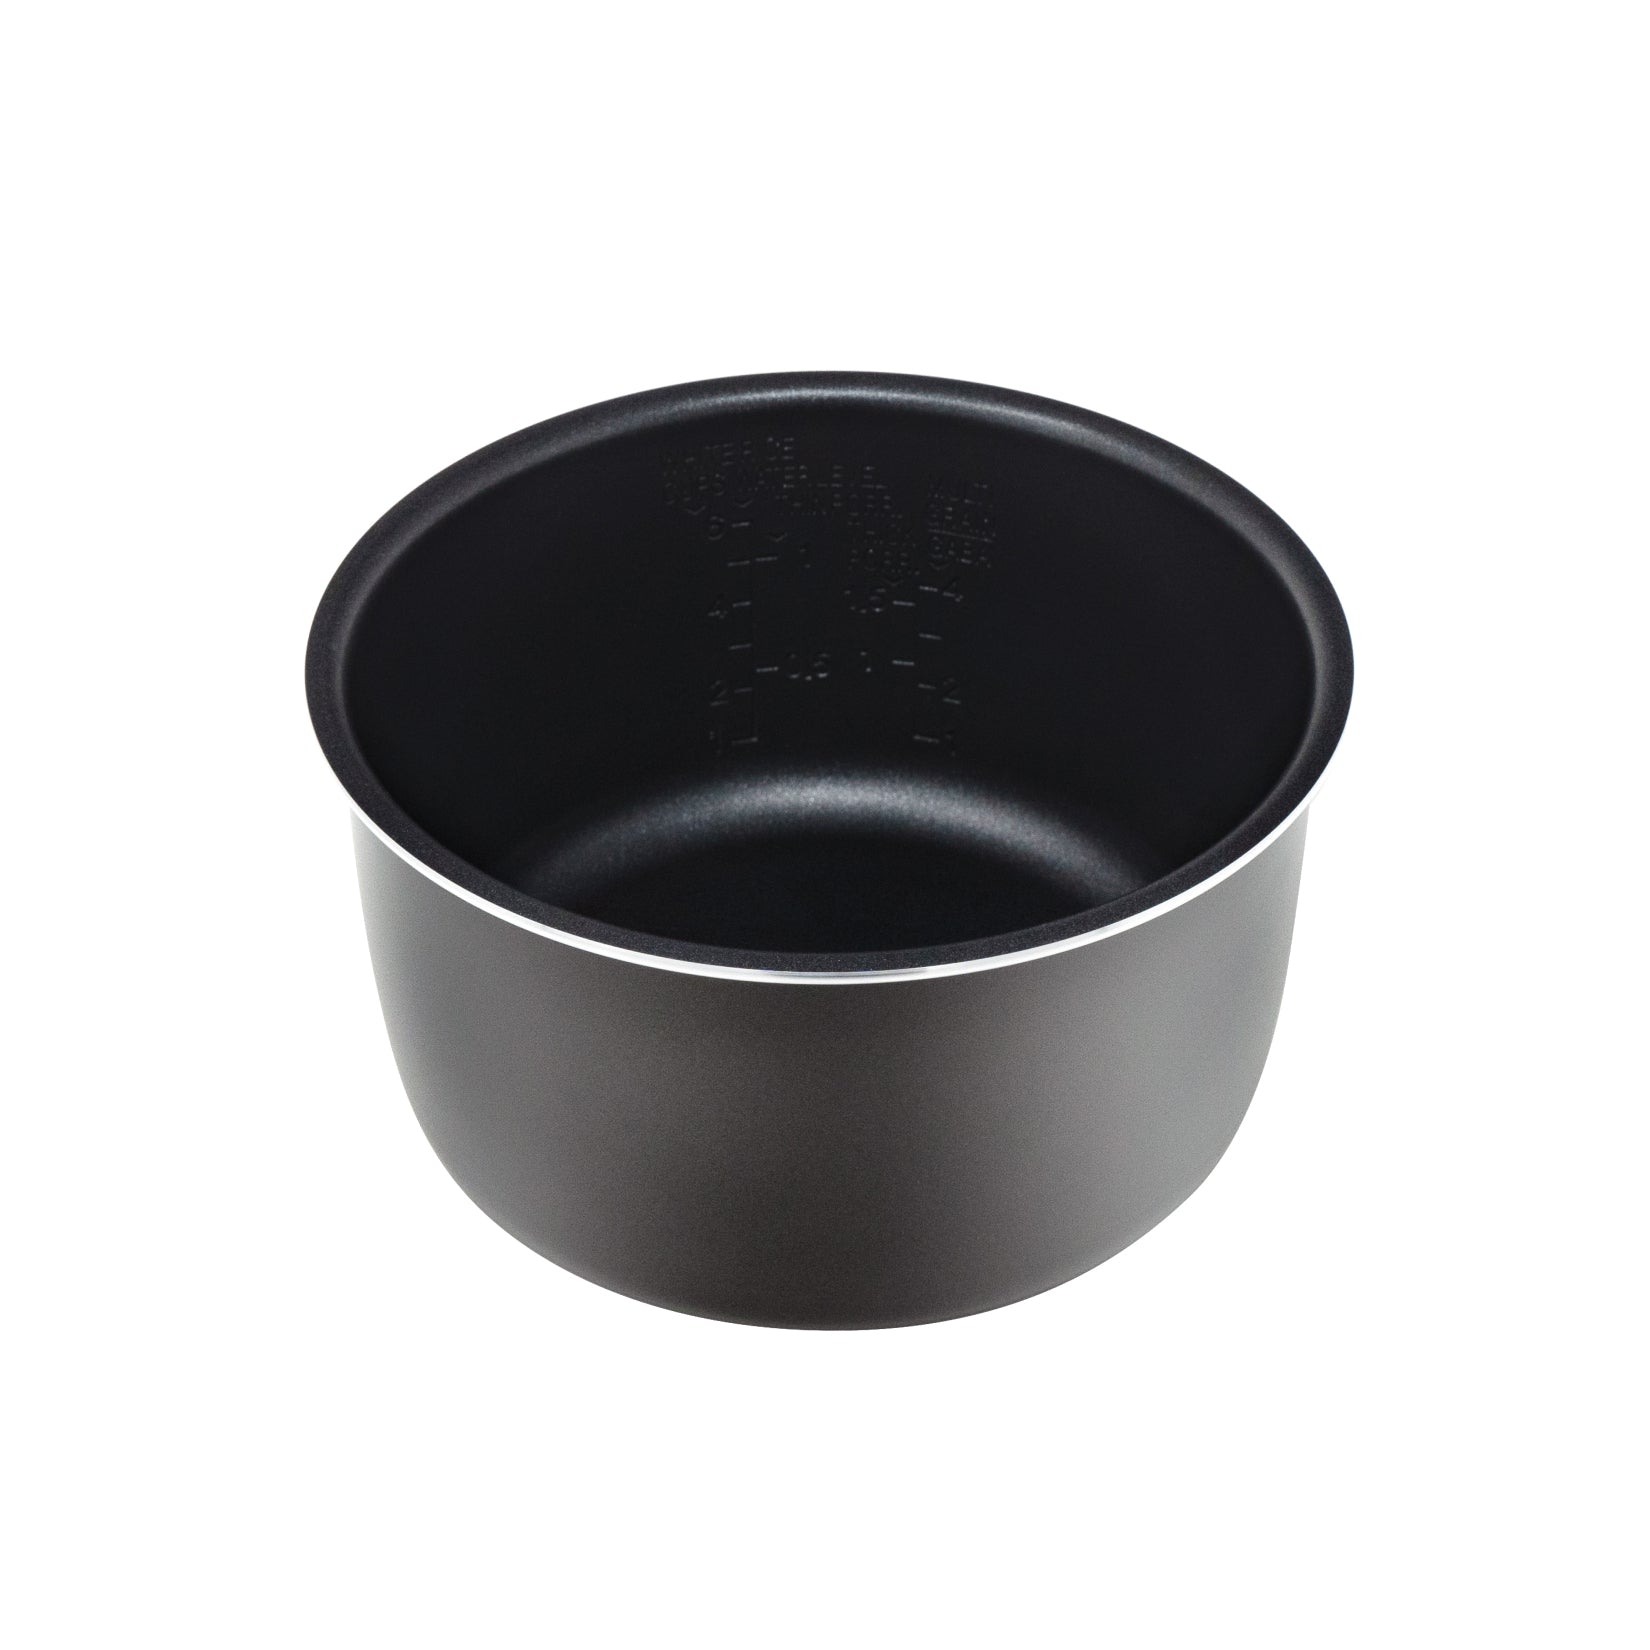 CUCKOO Inner Pot for CR-0631F CR-0632FV CR-0651FV CR-0651FR Rice